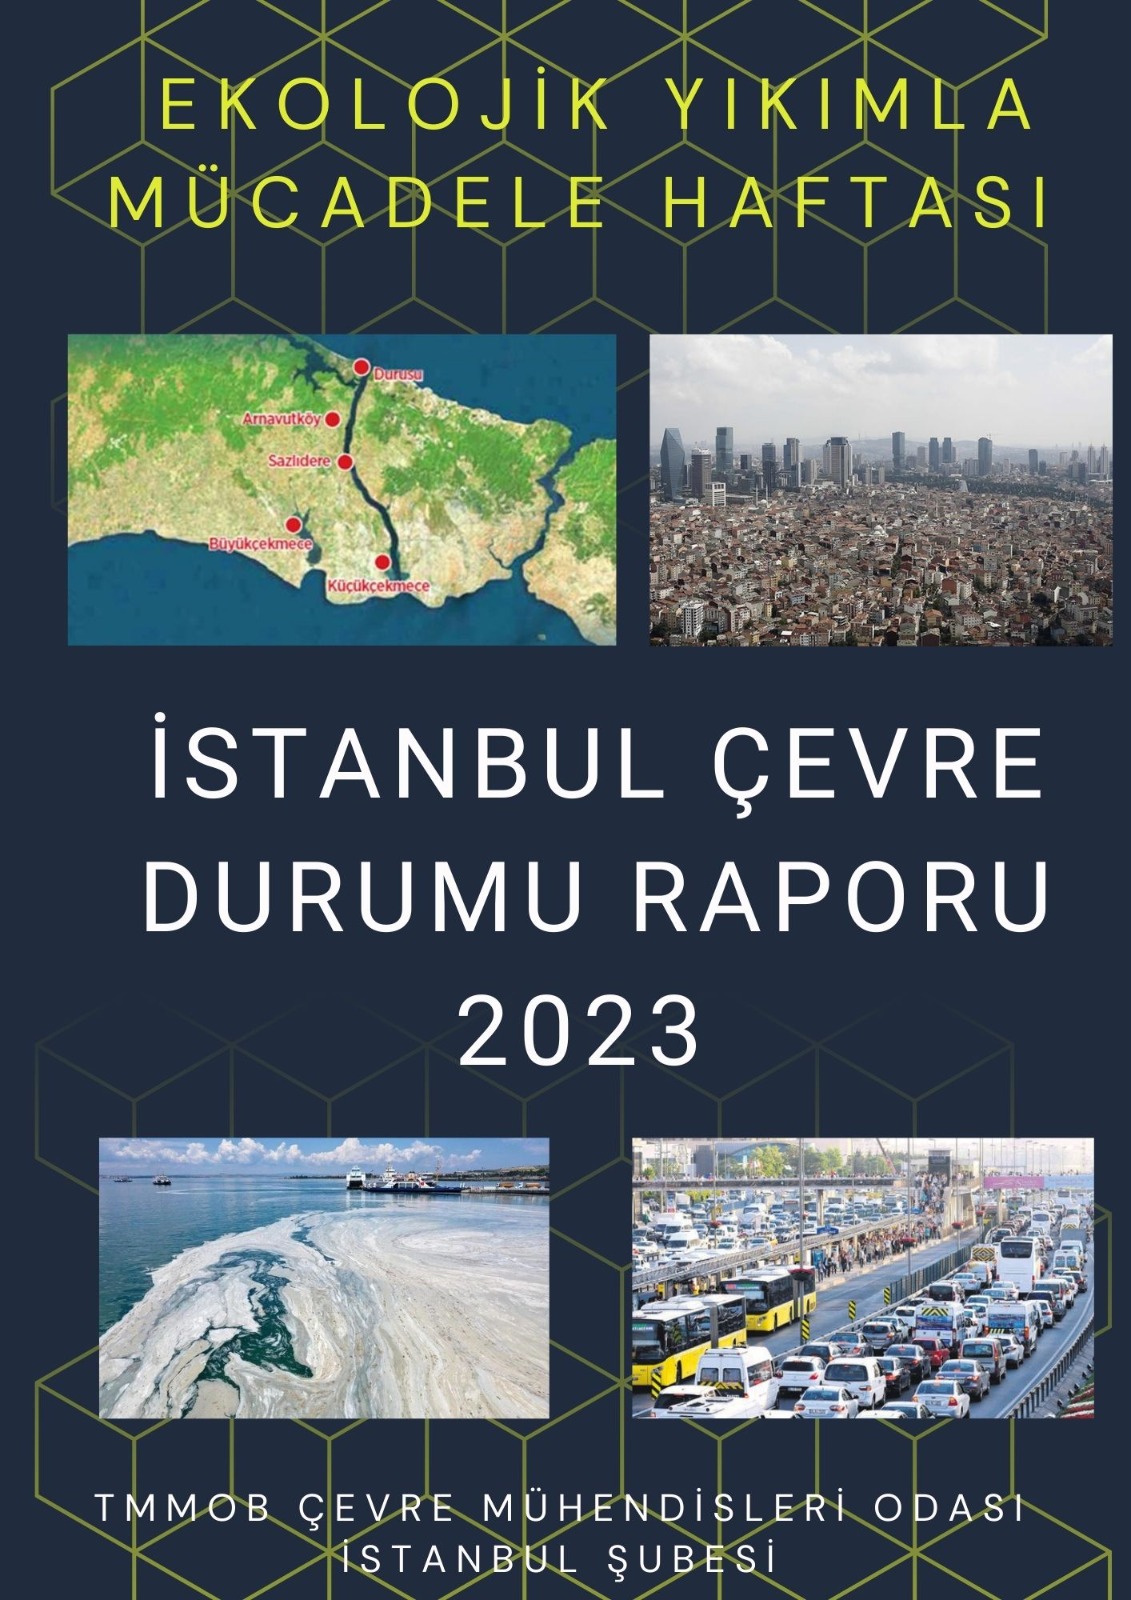 2023 yılı İstanbul Çevre Durum Raporu